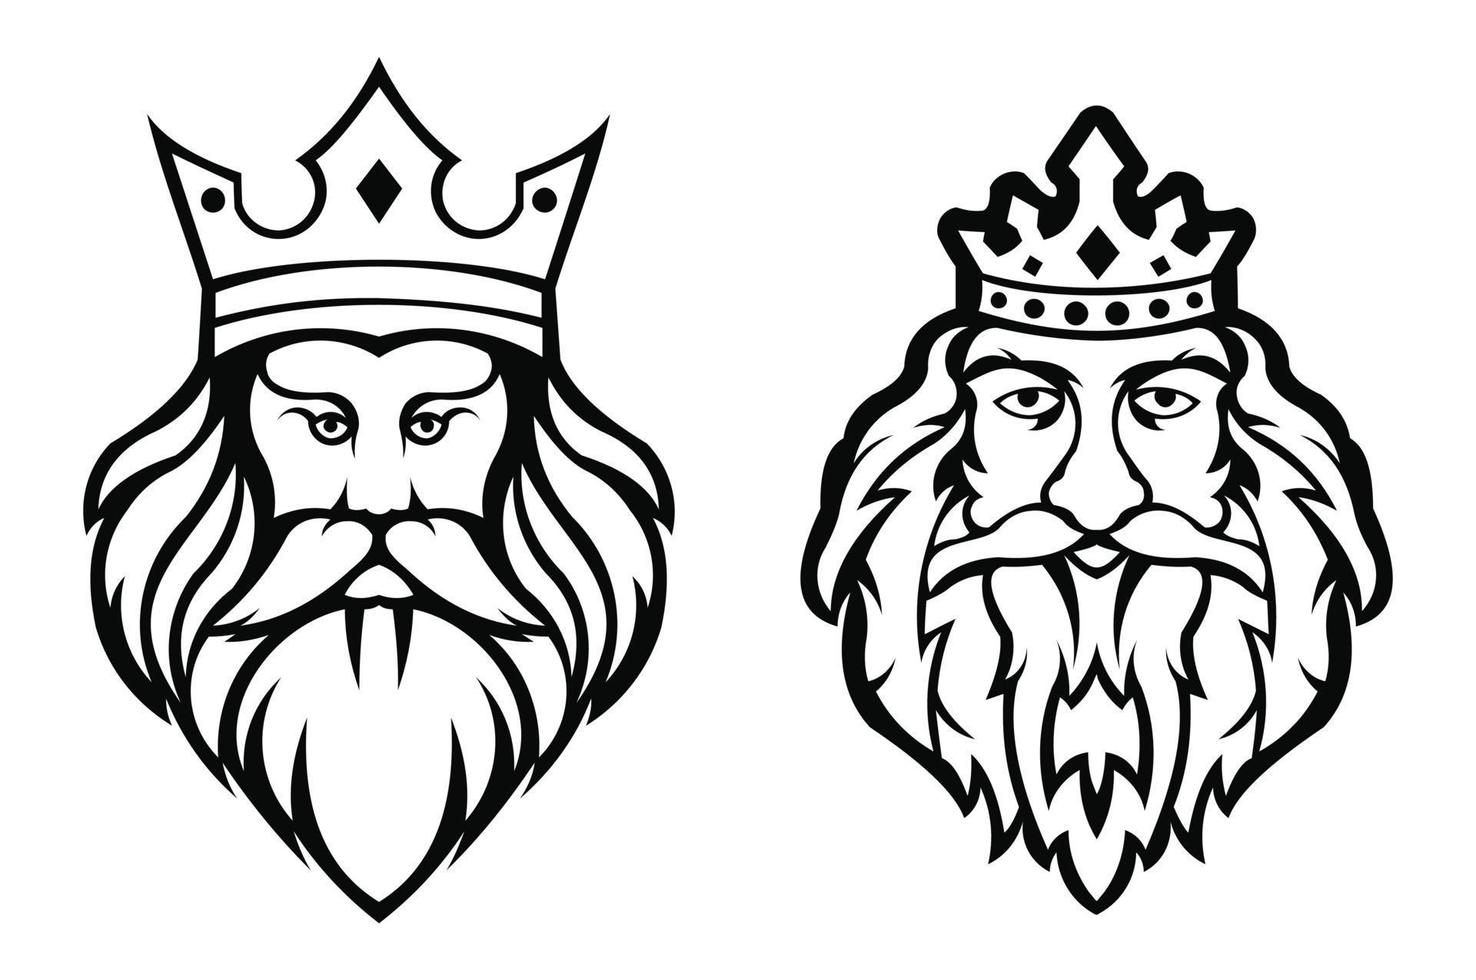 Bearded king logo.king man, Design element for sign, badge, t shirt, poster. vector